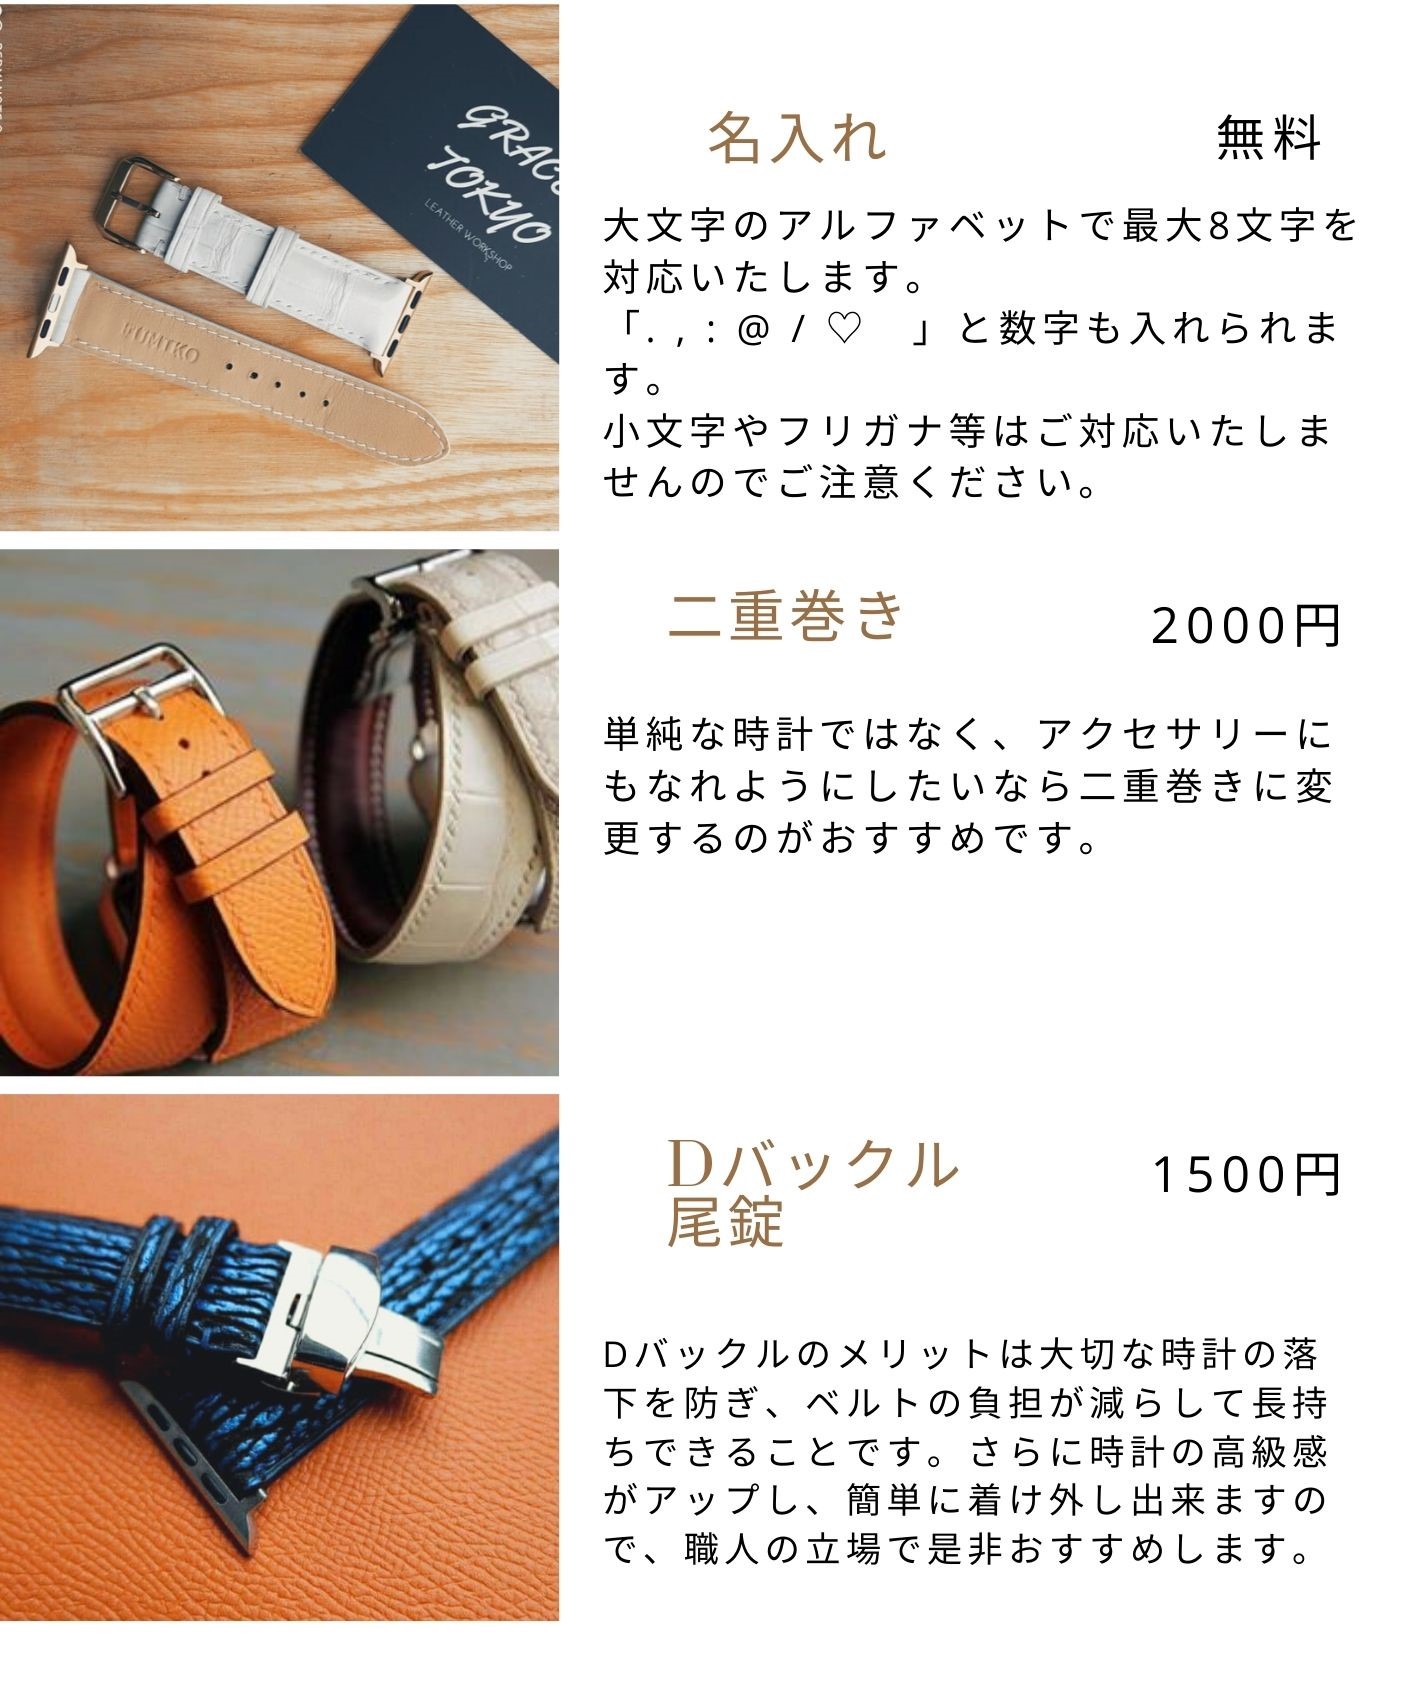 高級革使用のapple Watchベルト 時計ベルト レザー イエロー 腕時計 革ベルト 皮 革 Iichi ハンドメイド クラフト作品 手仕事品の通販